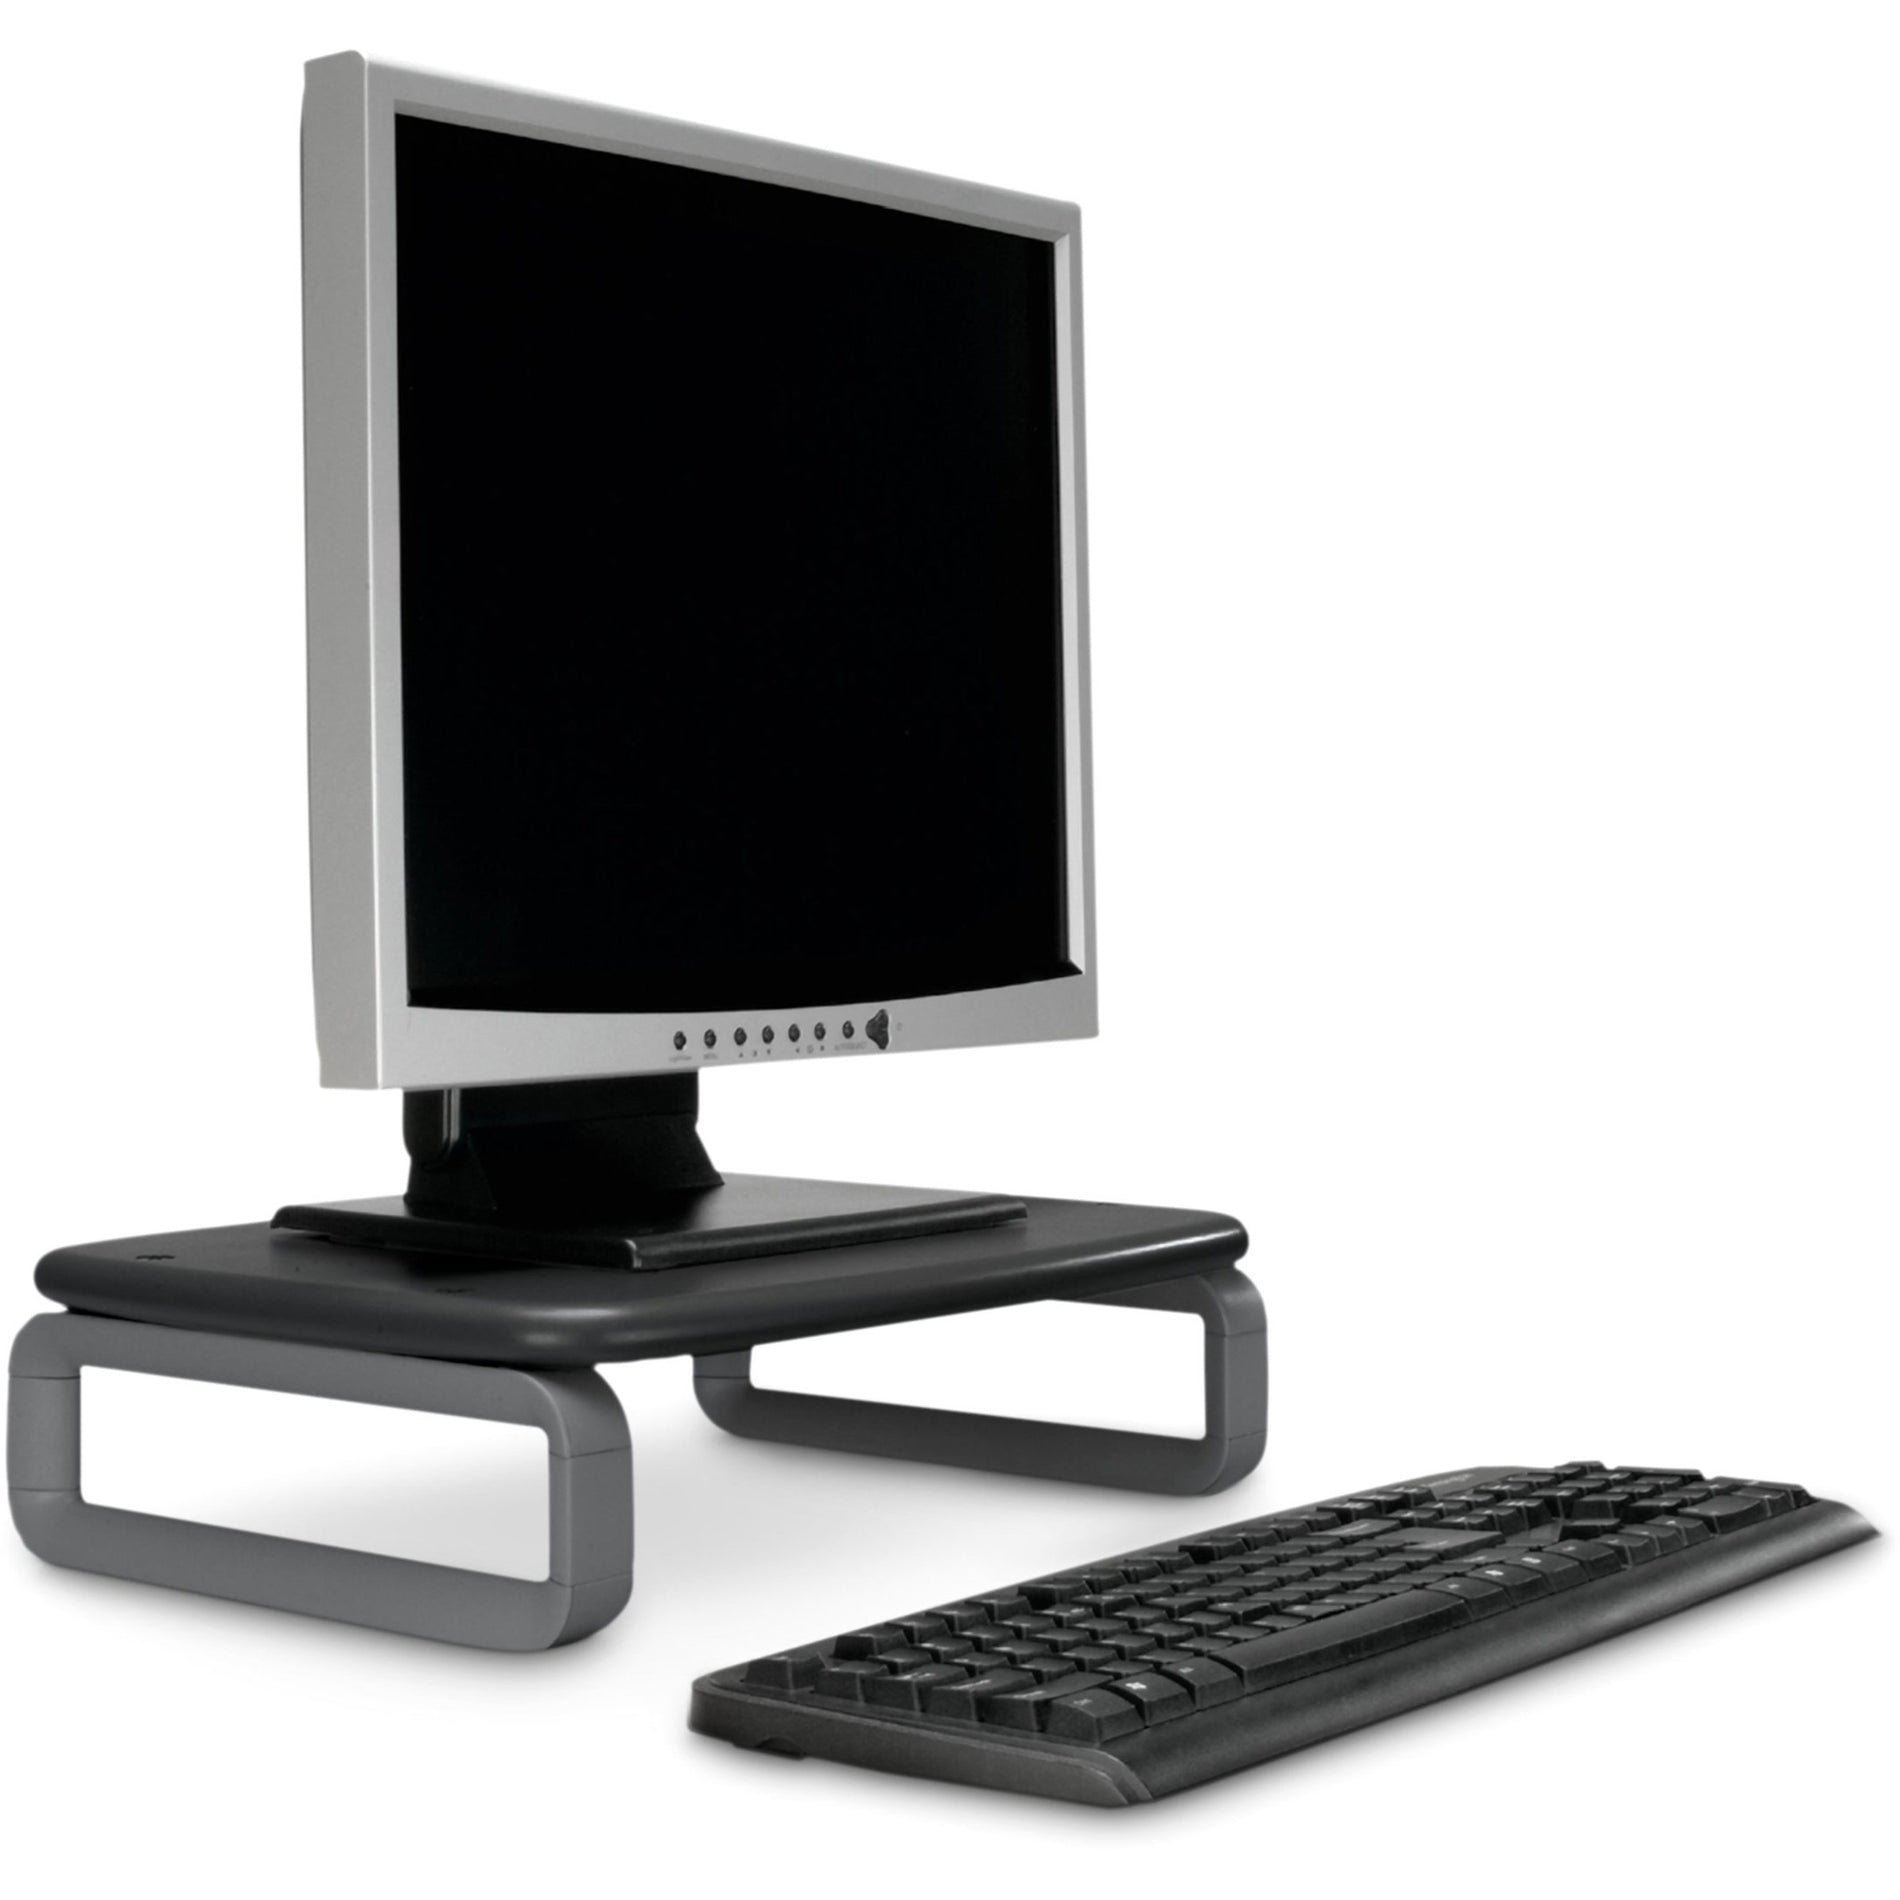 Kensington K60089 SmartFit Monitor Stand Plus für bis zu 24" Bildschirme Höhenverstellbar Platzsparendes Design